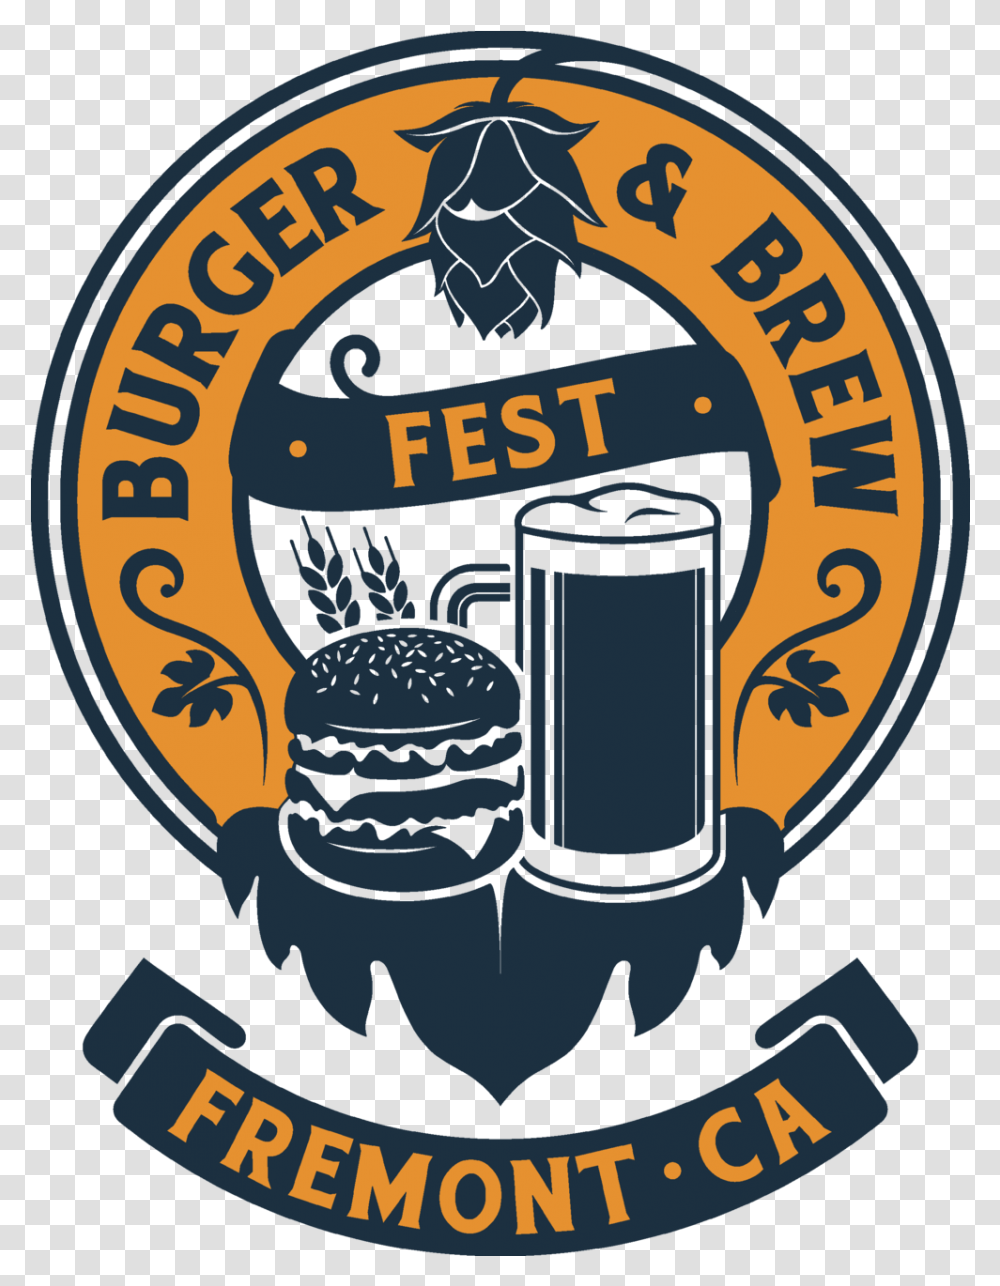 Burger Brew Fest Emblem, Poster, Symbol, Glass, Logo Transparent Png